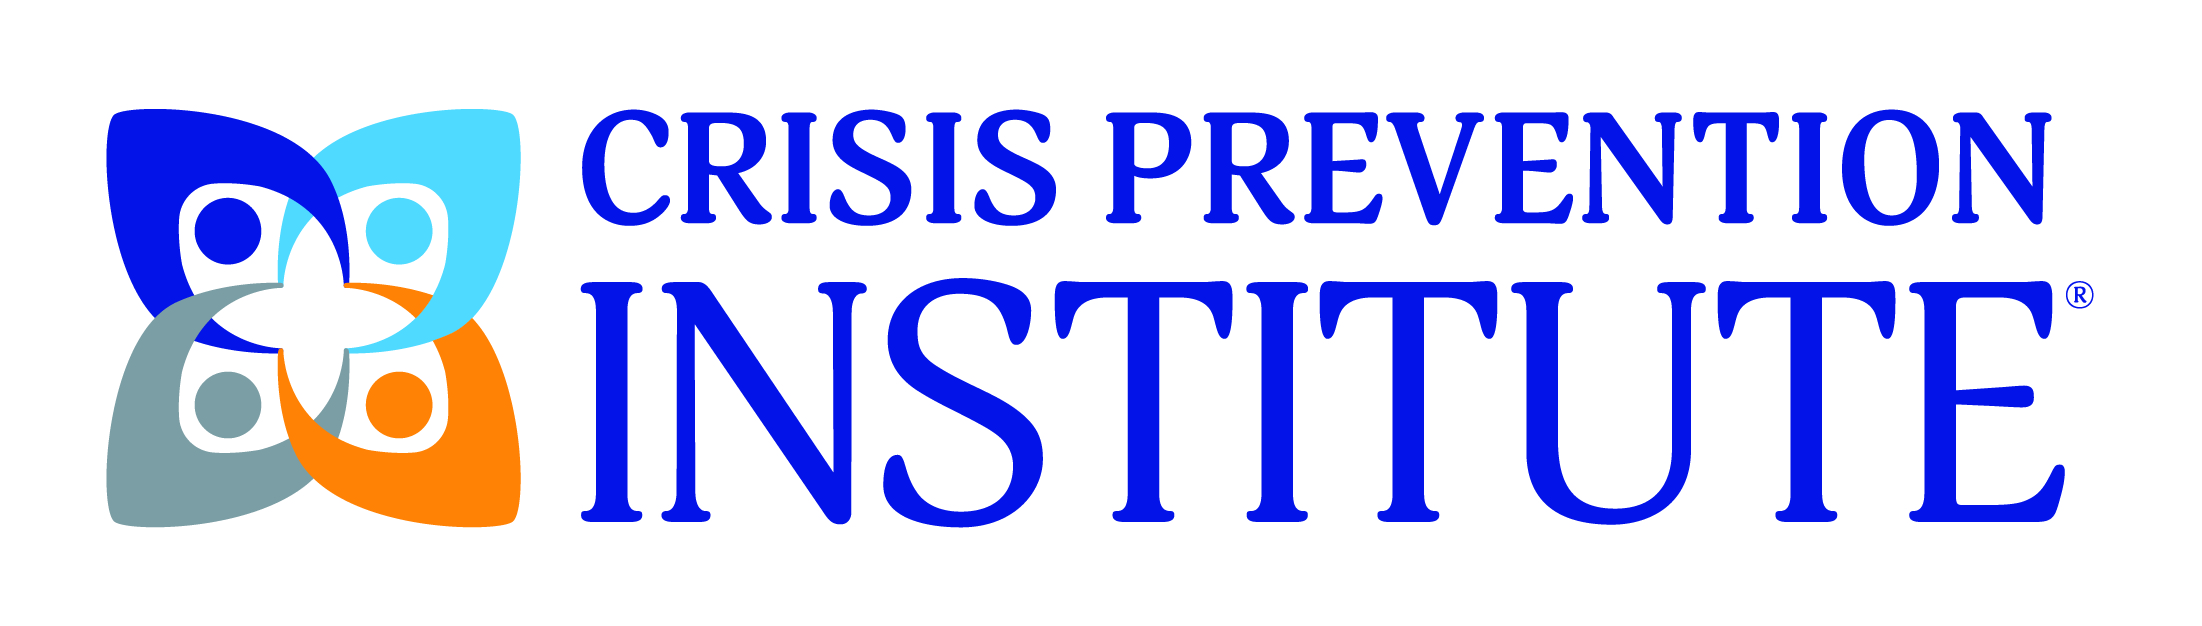 Crisis Prevention Institute - Logo